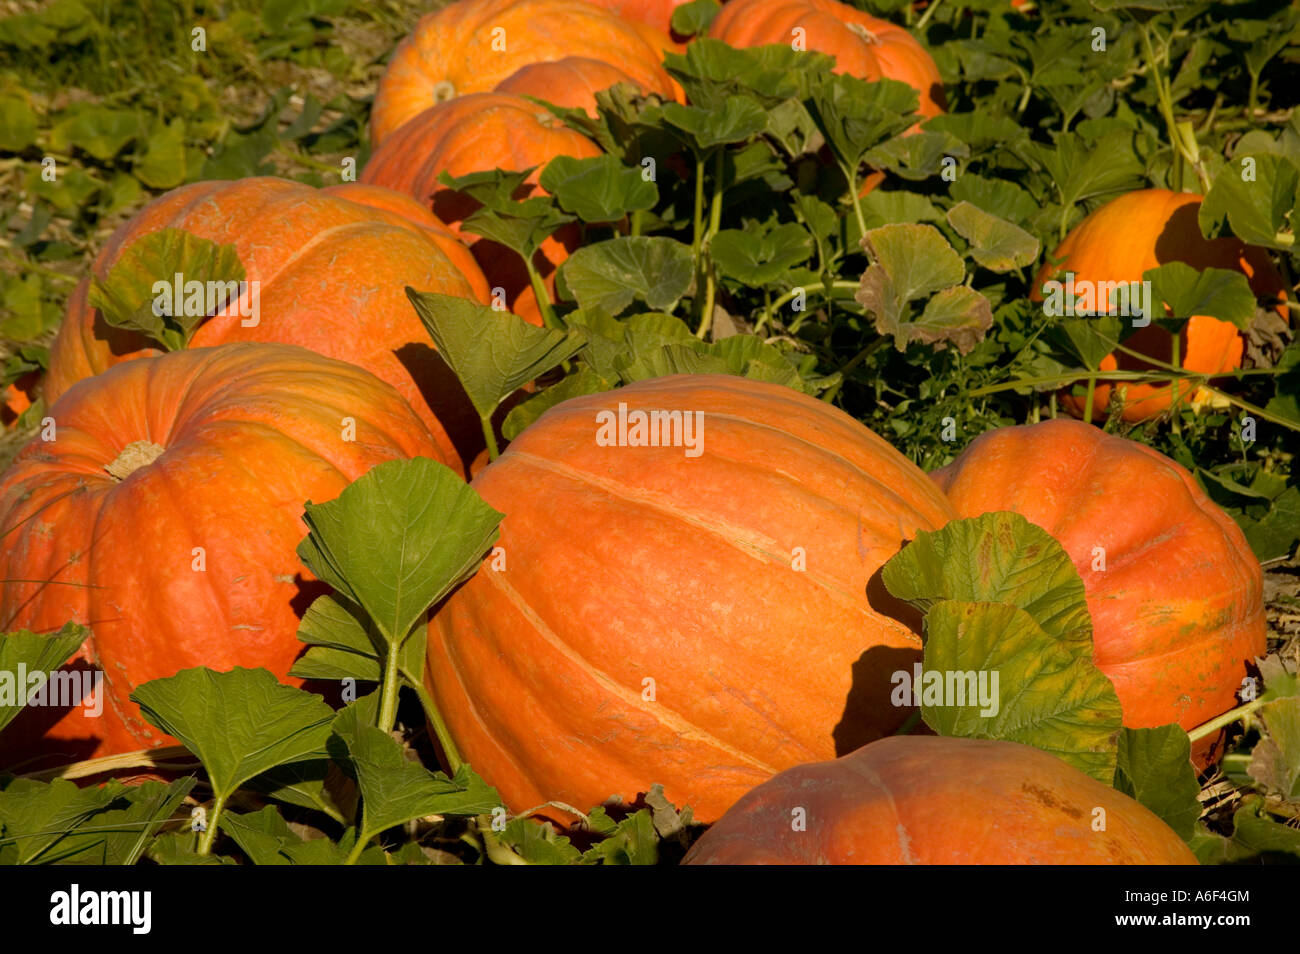 Pumpkins 'Big Max' in field. Stock Photo